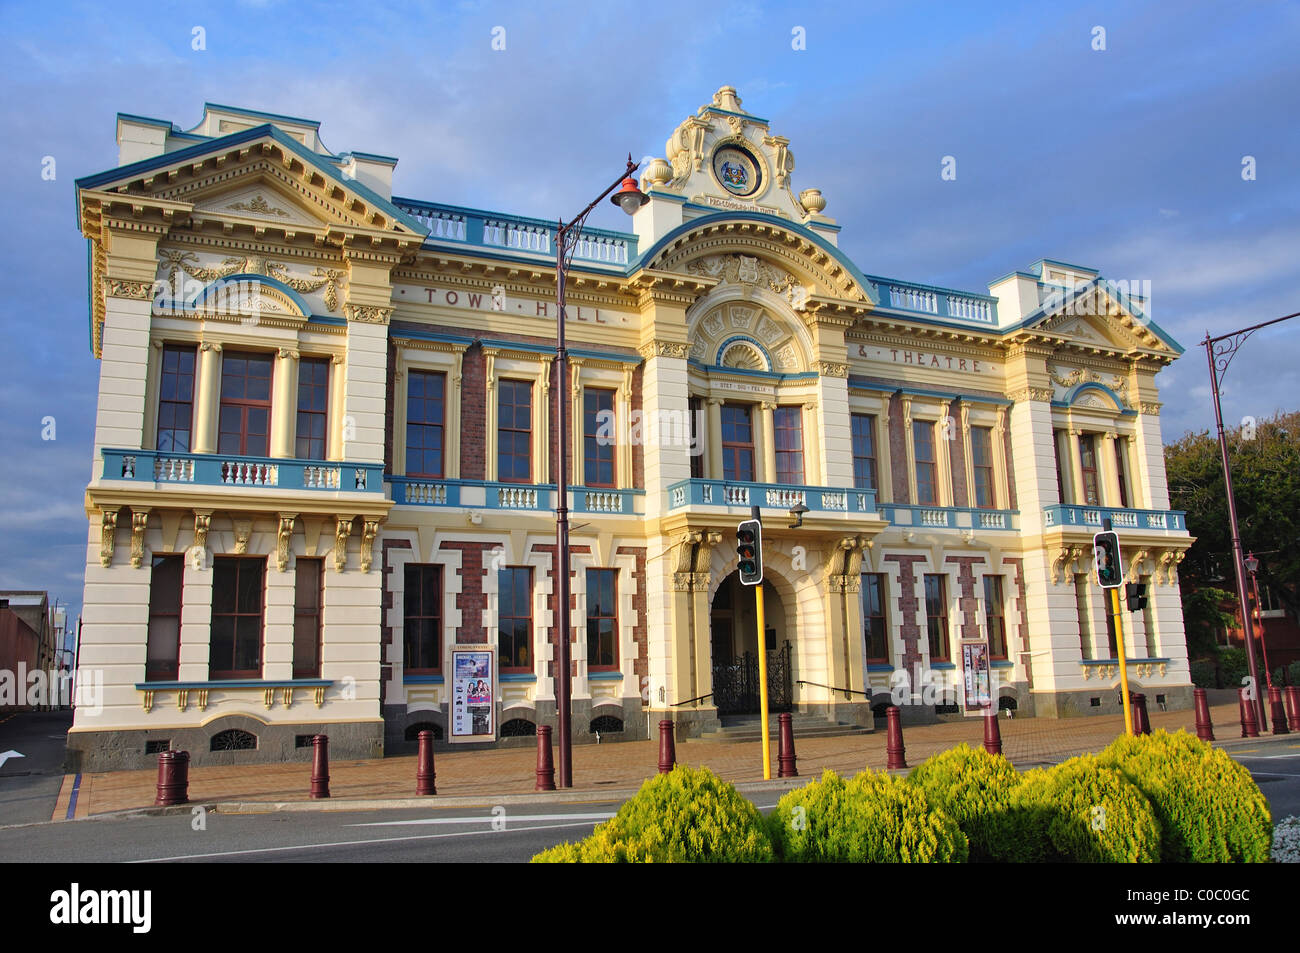 Civic Theatre, Tay Street, Invercargill, Southland, île du Sud, Nouvelle-Zélande Banque D'Images